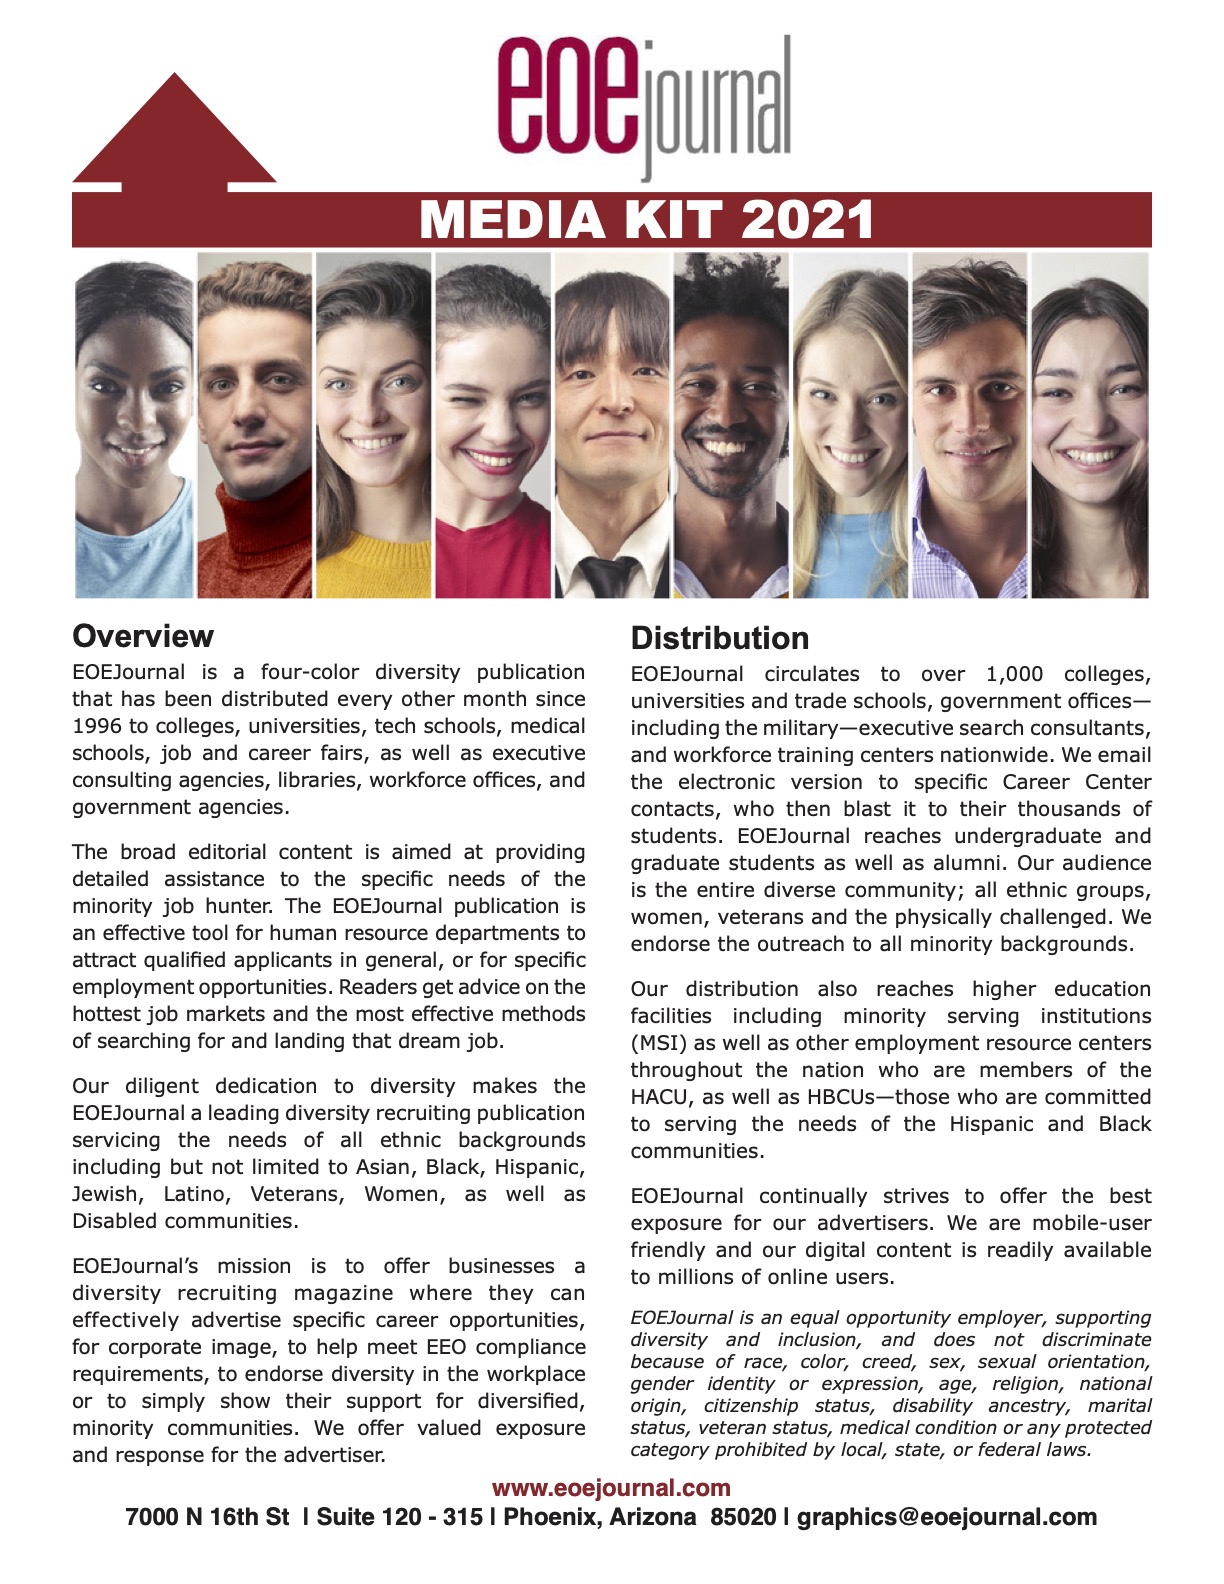 EOEJ_media kit_2021_v2_pic